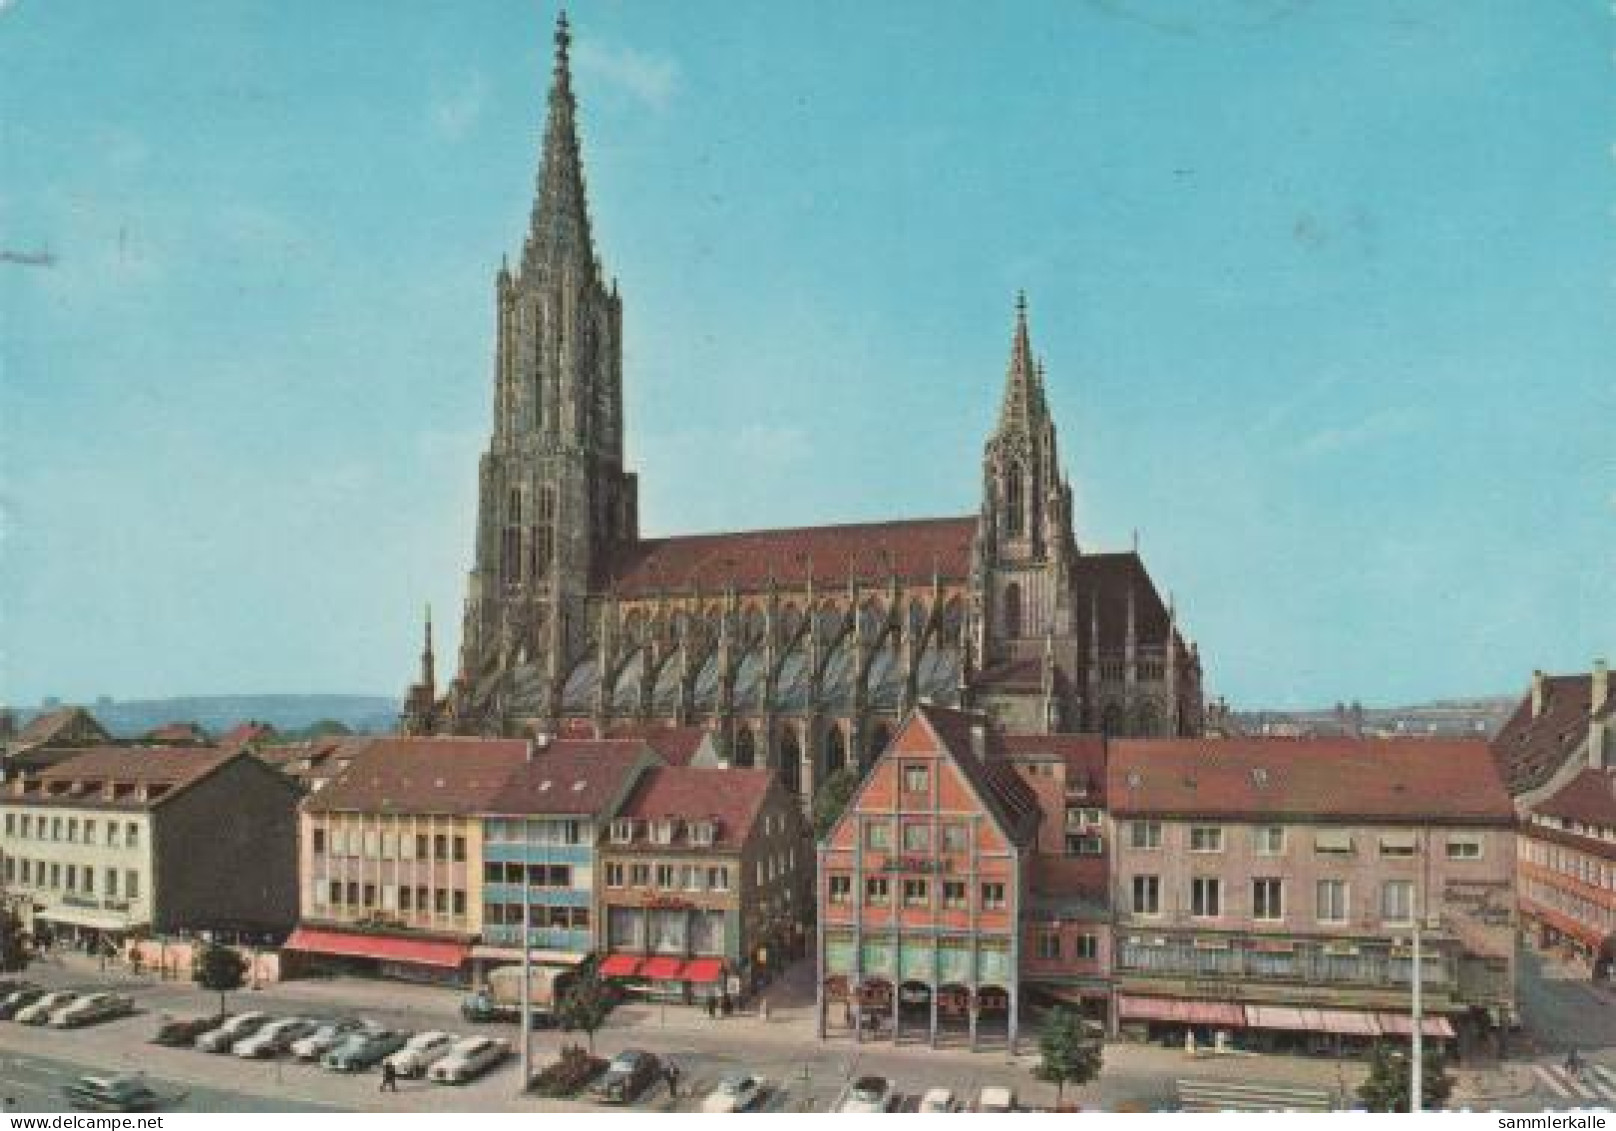 826 - Ulm/Donau - Münster - 1965 - Ulm